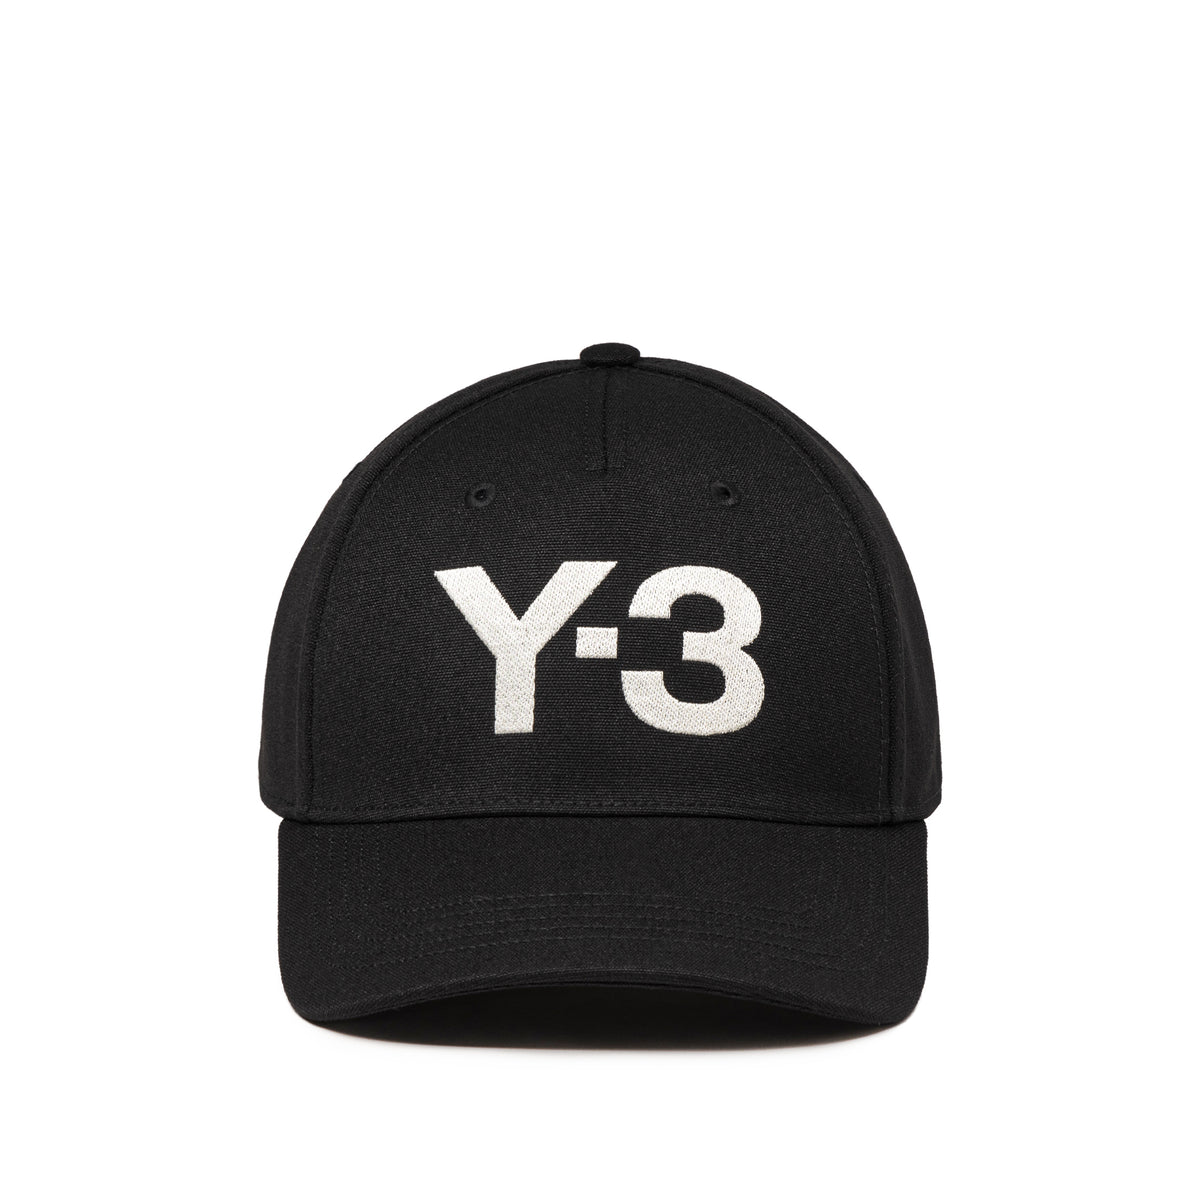 Adidas Y-3 Y-3 Logo Cap » Buy online now!